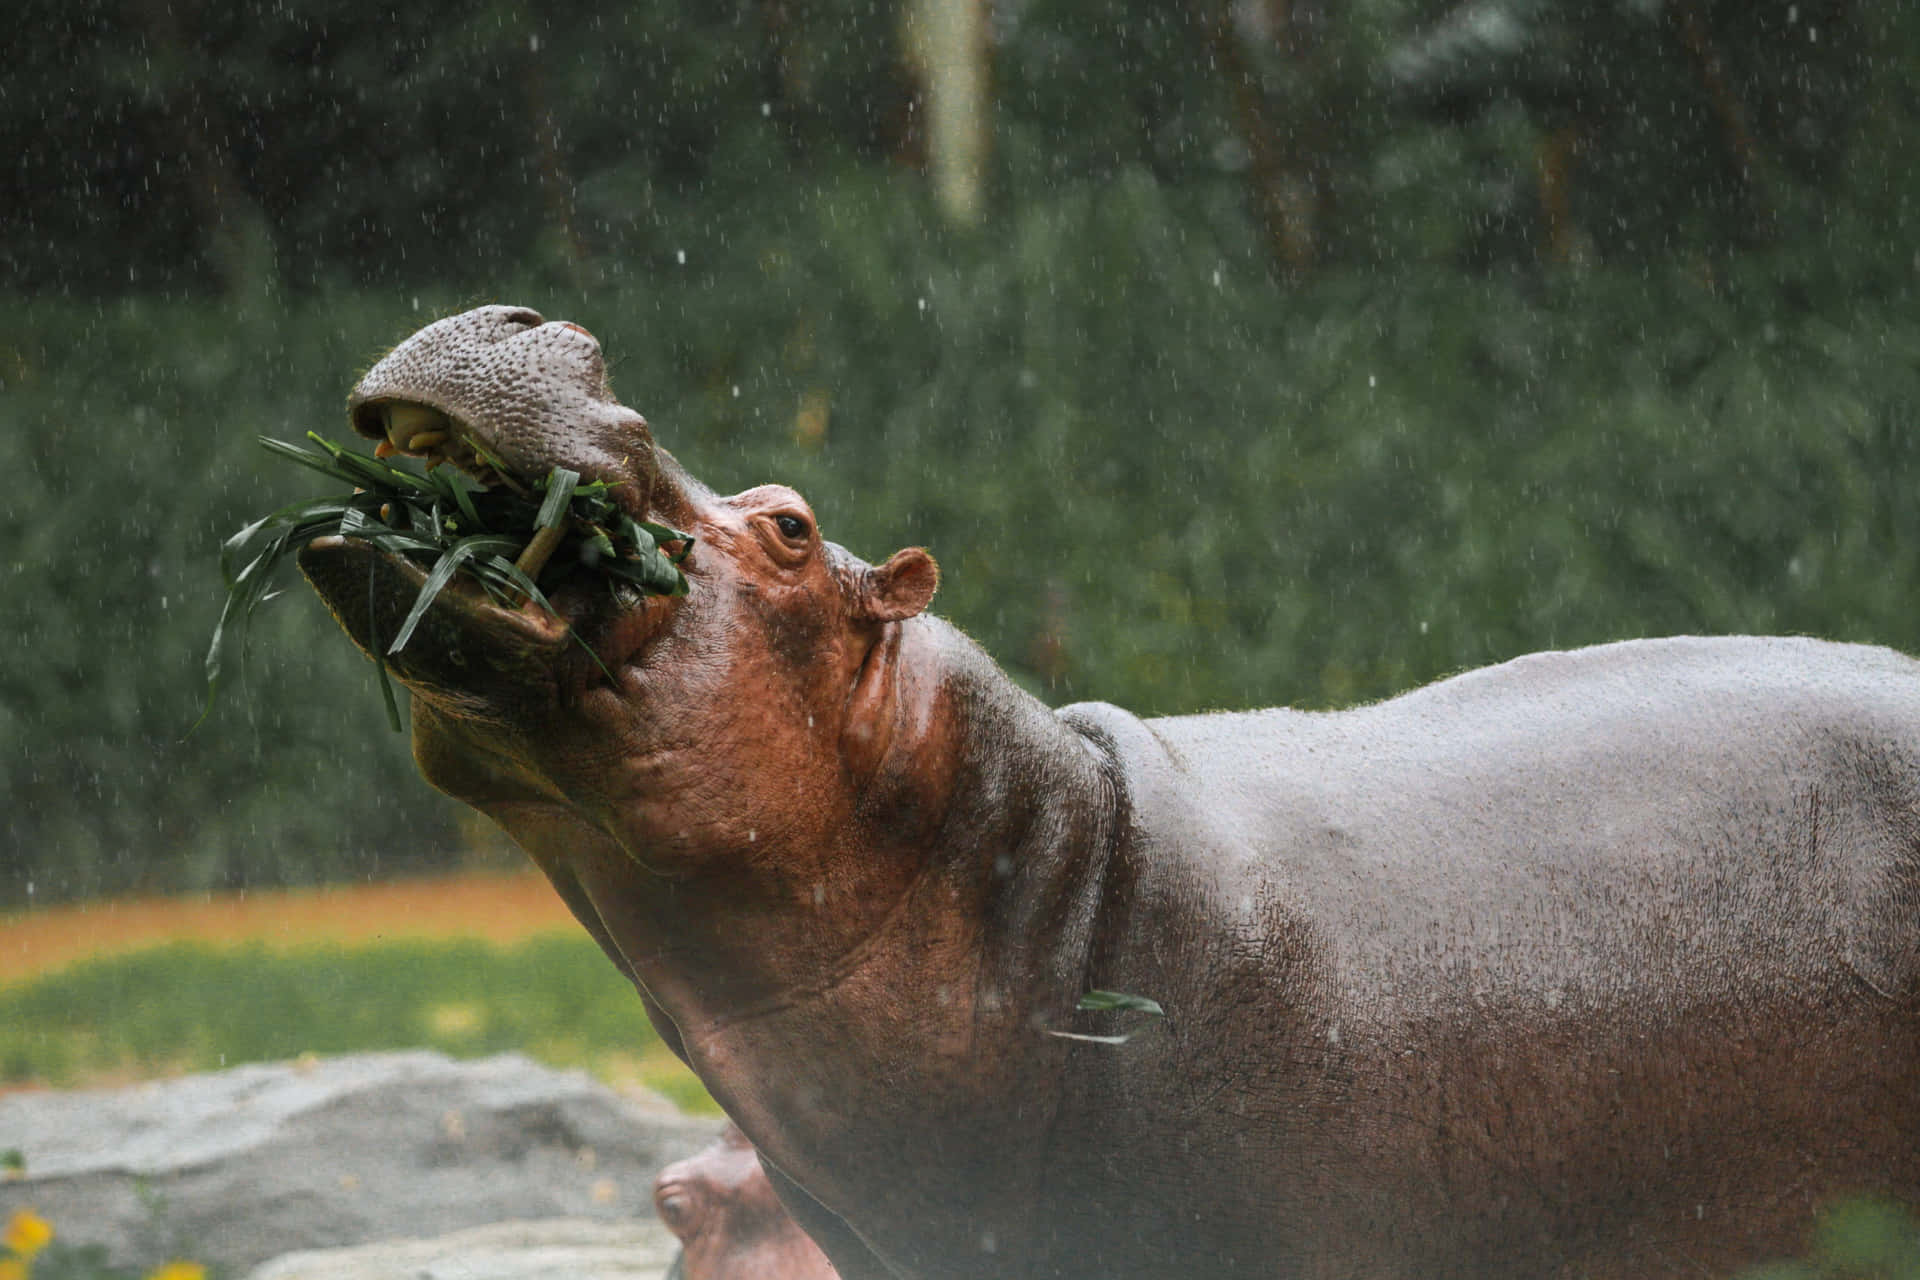 Imagemde Um Hipopótamo Comendo Plantas Na Água.